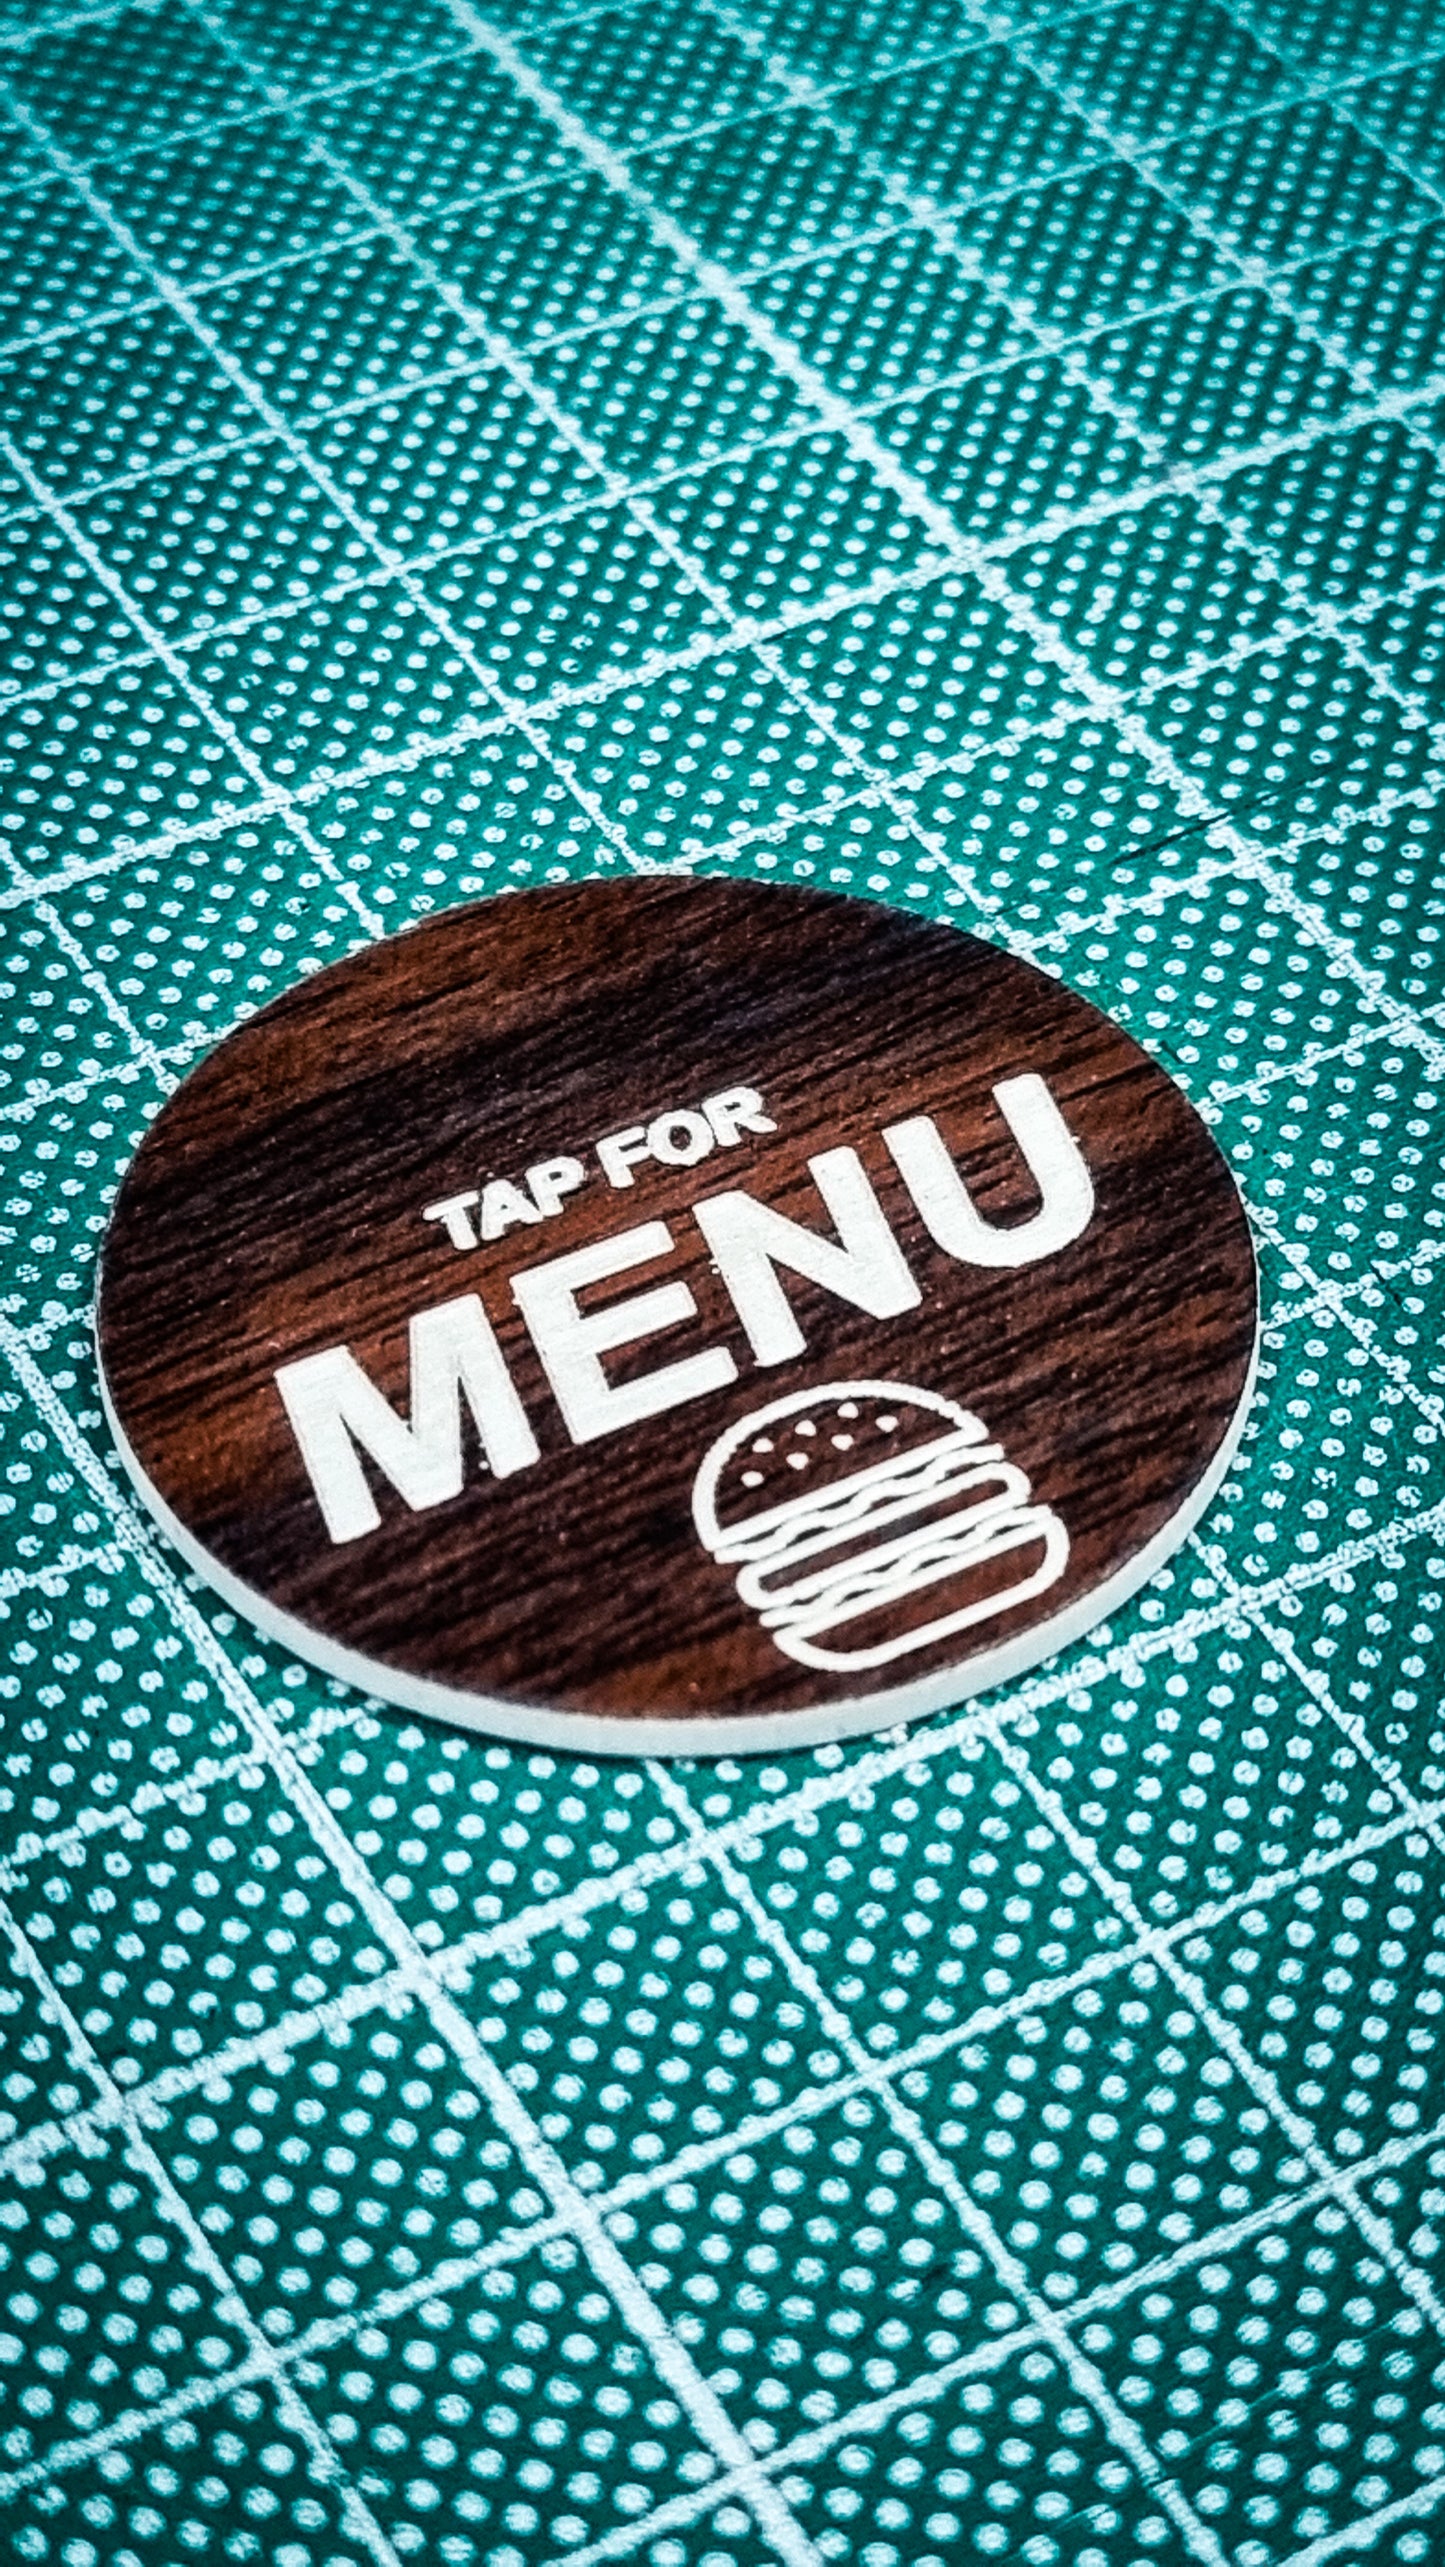 NFC TAP for menu